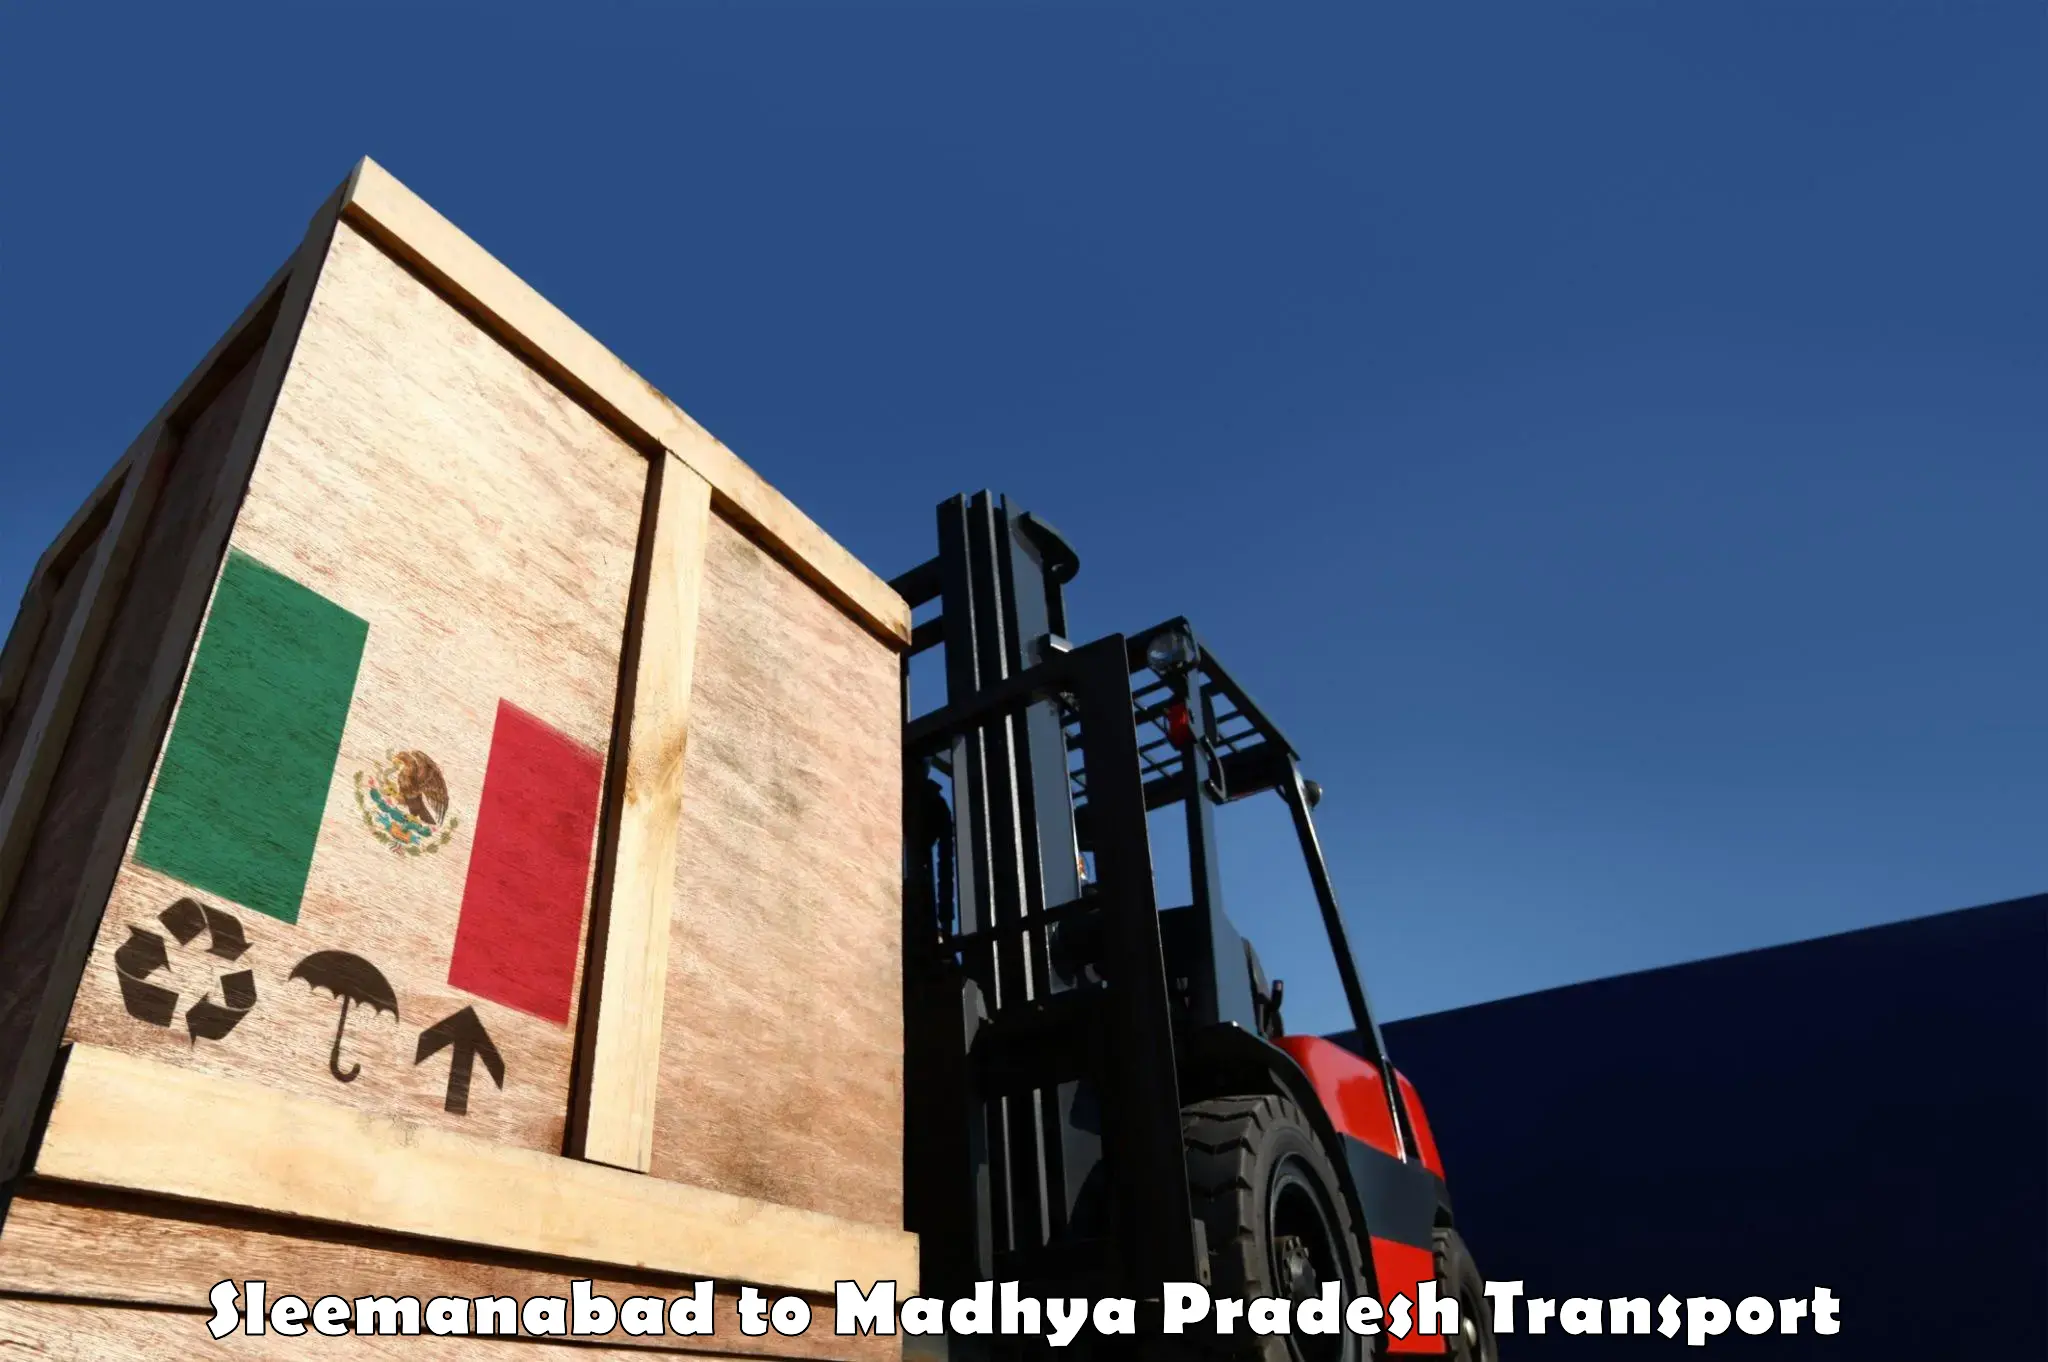 Truck transport companies in India Sleemanabad to Nagda